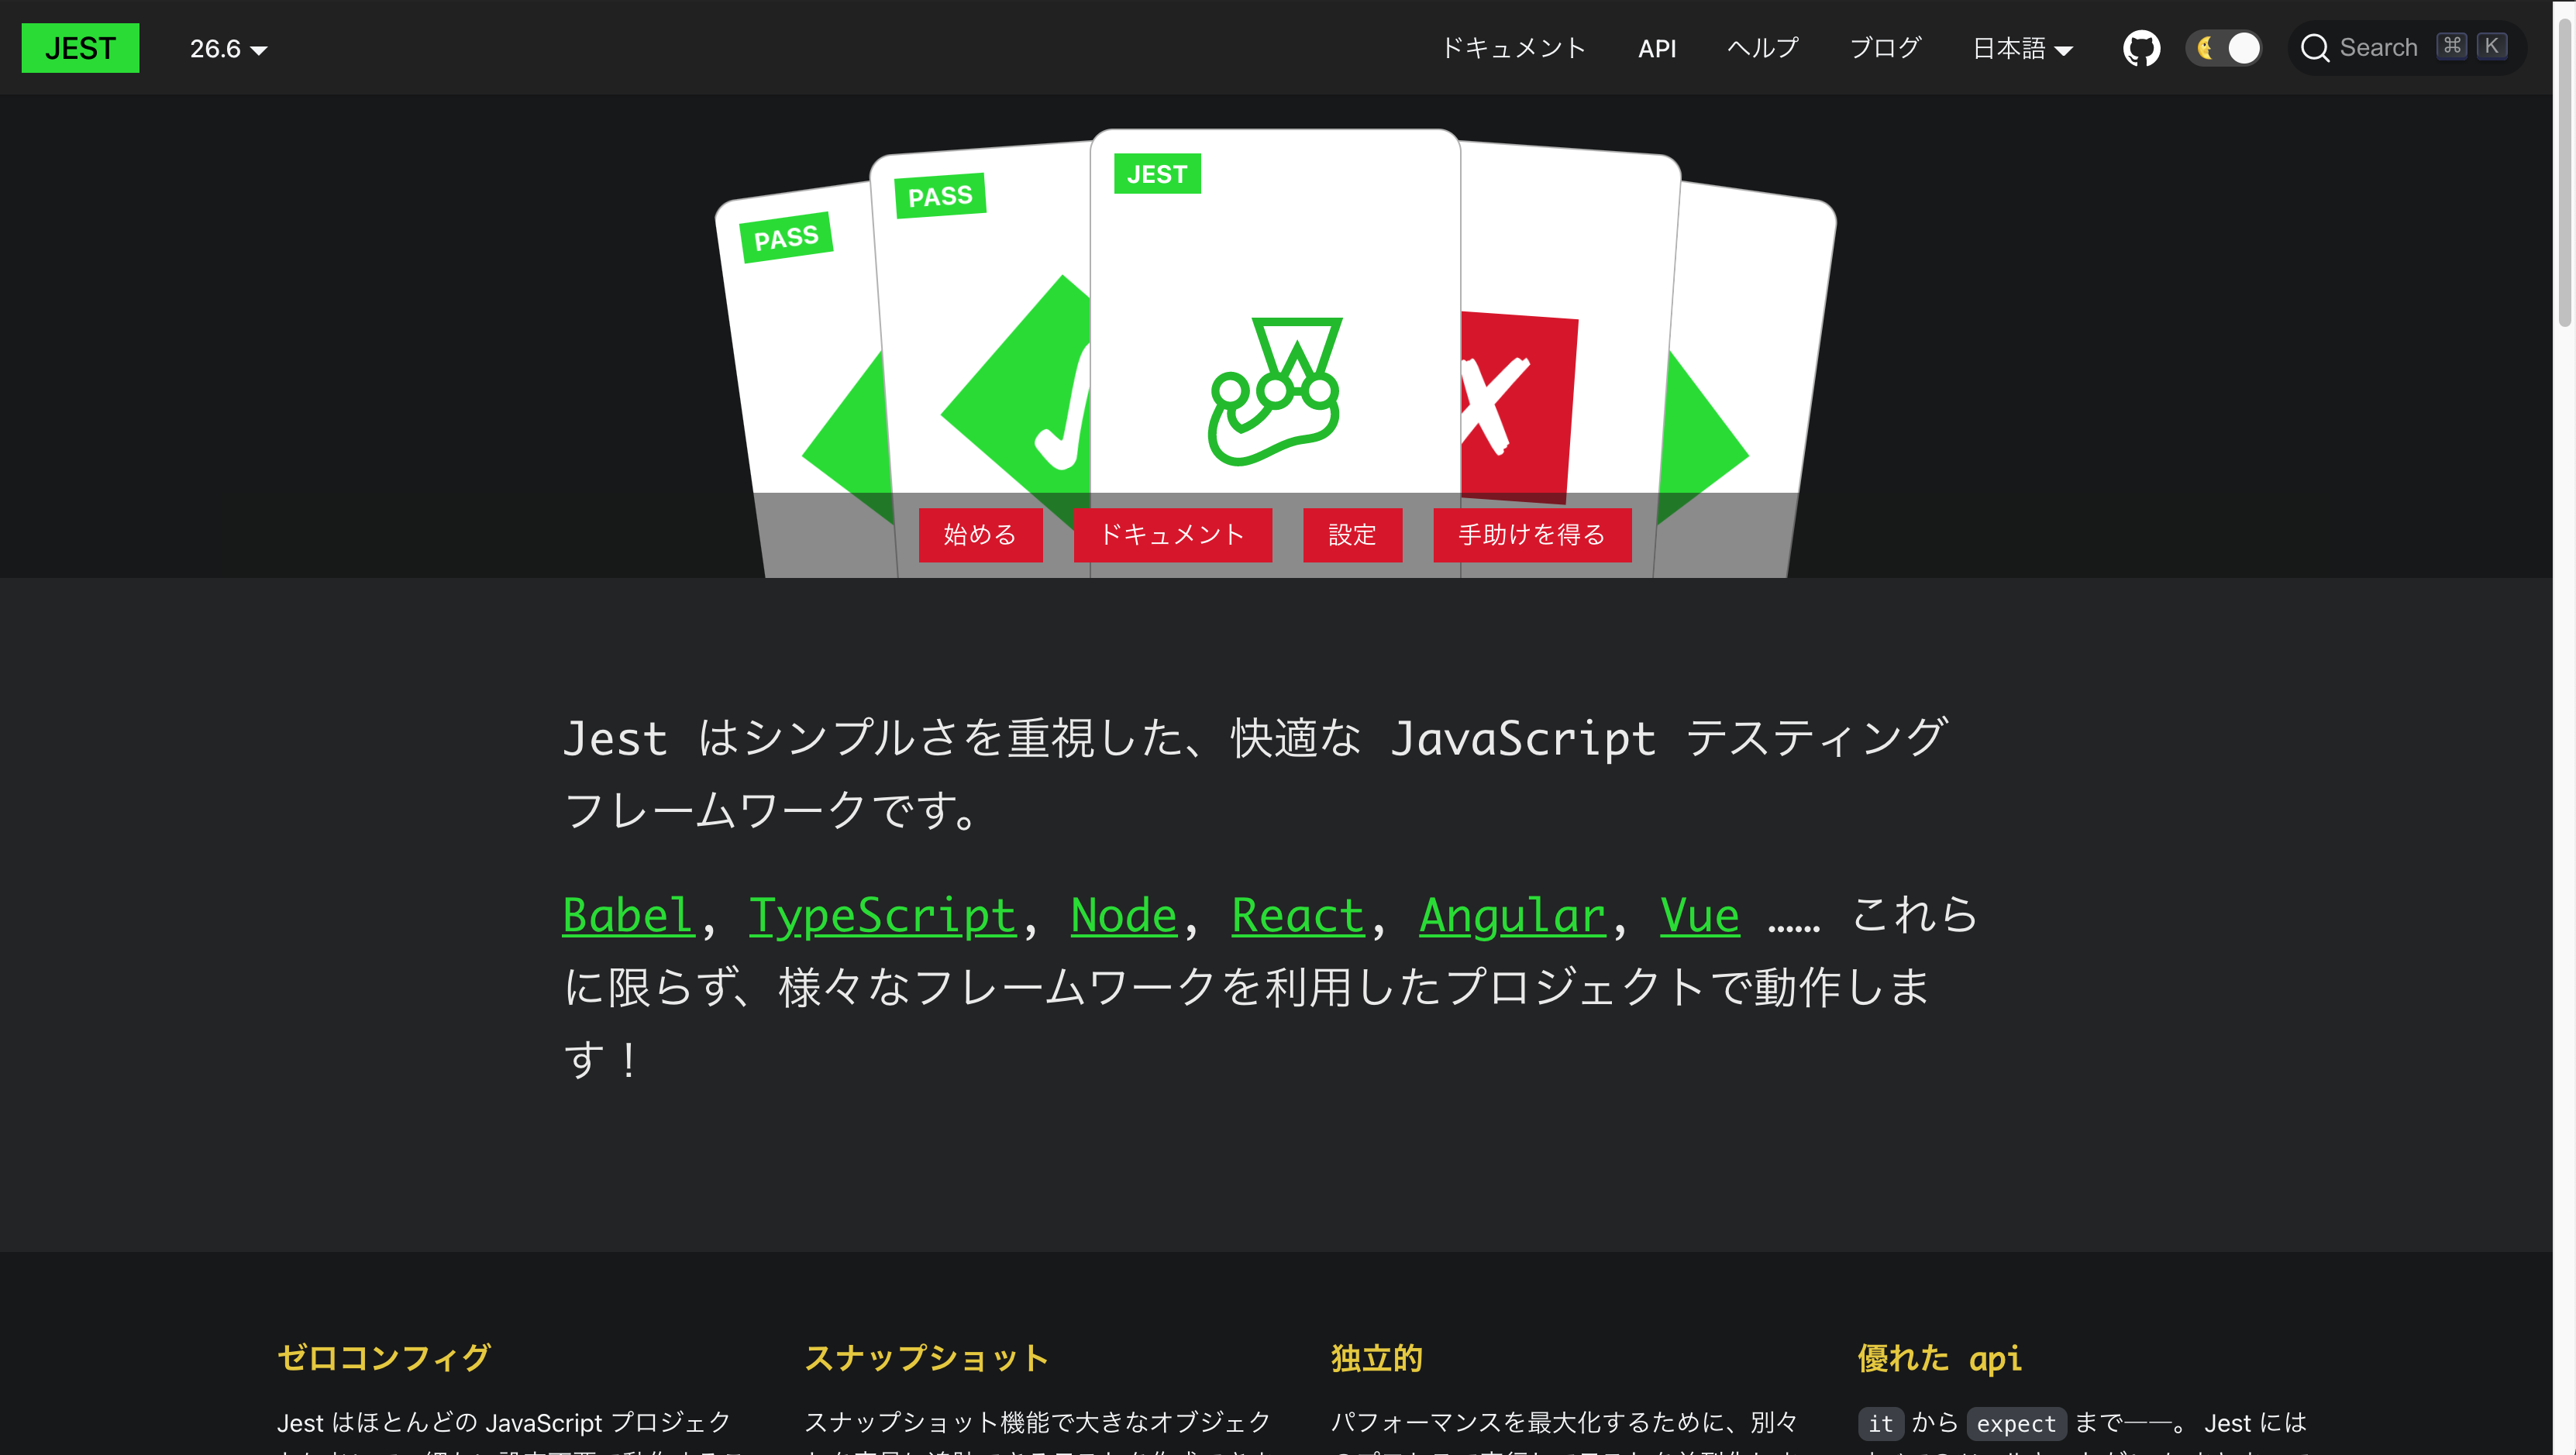 Captura de tela do Jest em japonês